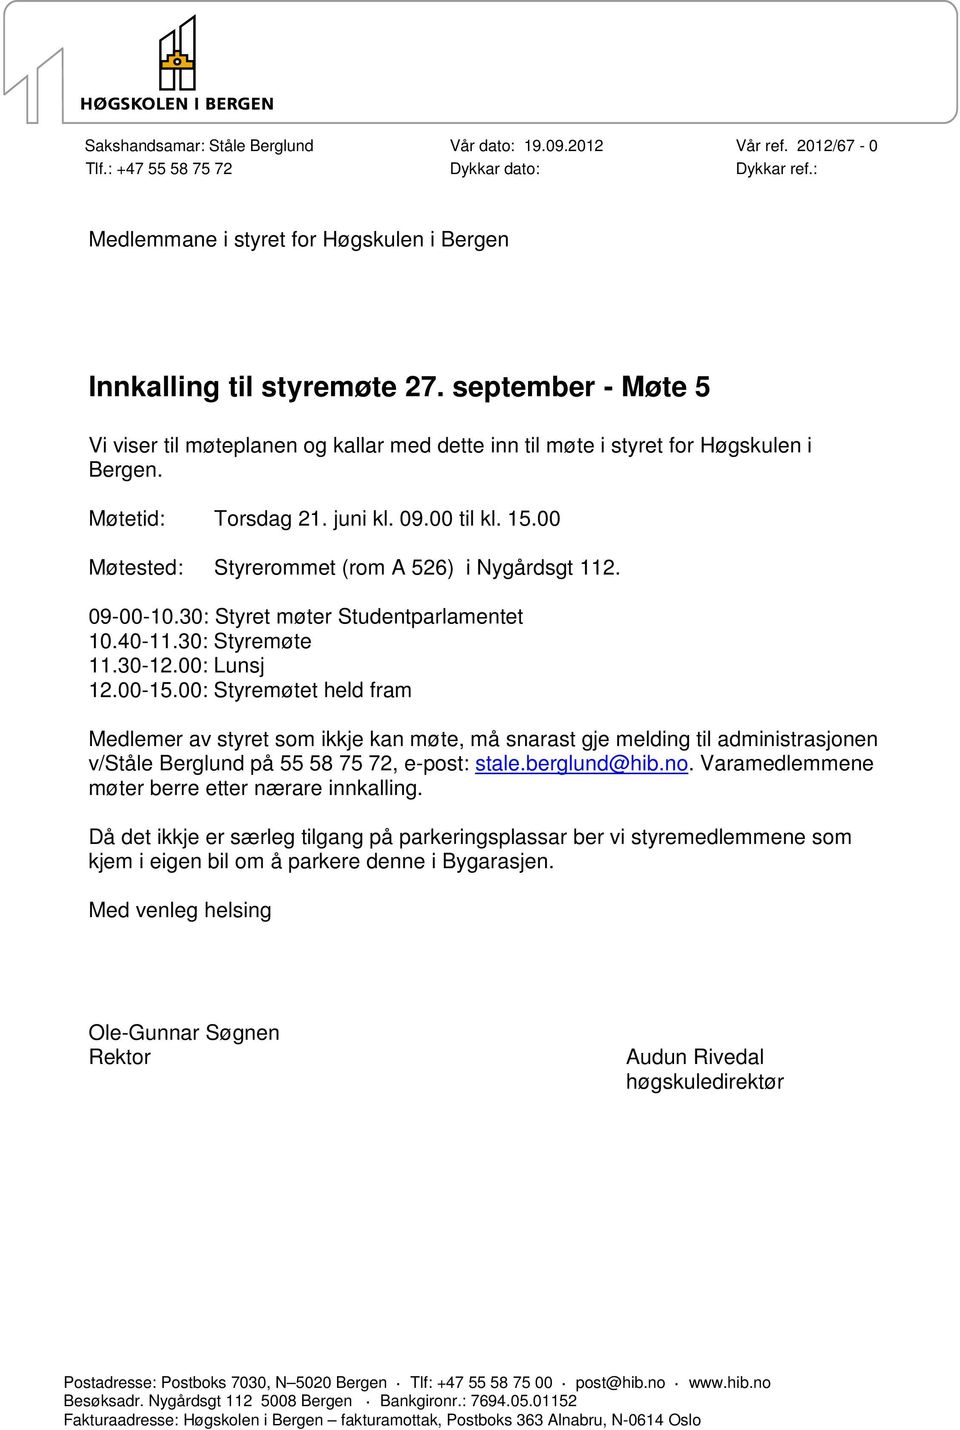 00 Møtested: Styrerommet (rom A 526) i Nygårdsgt 112. 09-00-10.30: Styret møter Studentparlamentet 10.40-11.30: Styremøte 11.30-12.00: Lunsj 12.00-15.